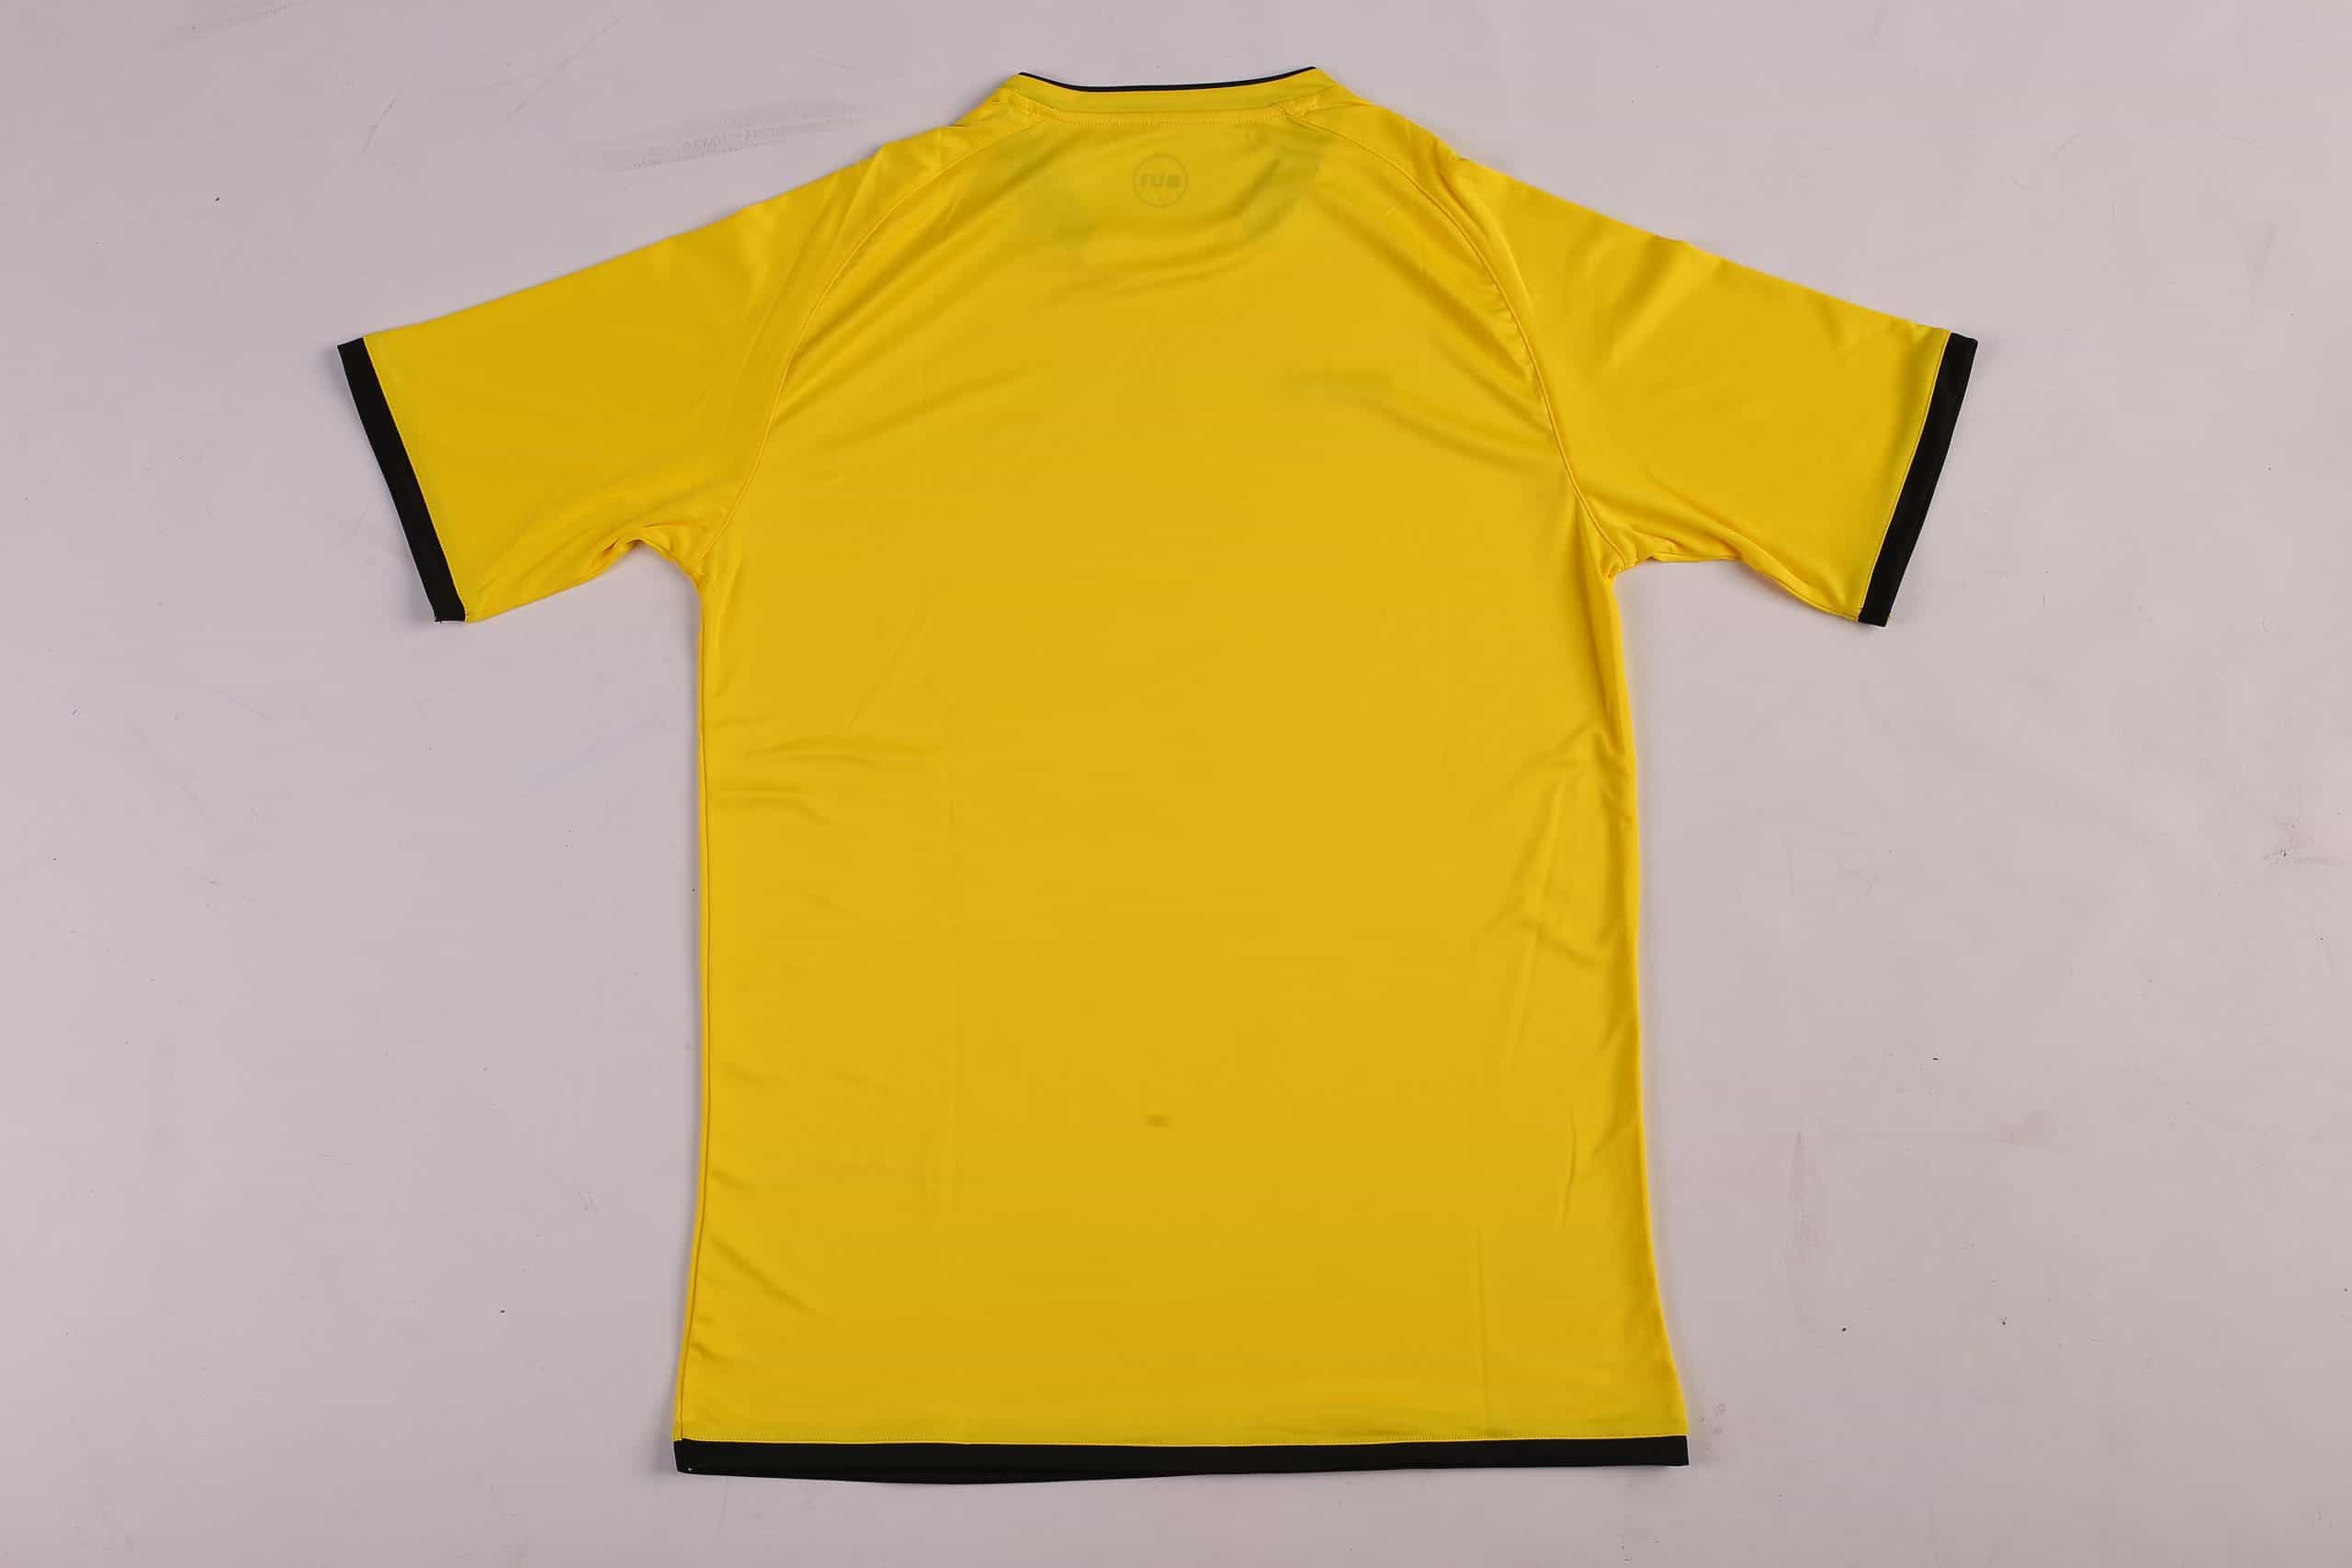 BU1 dres 20 žltý